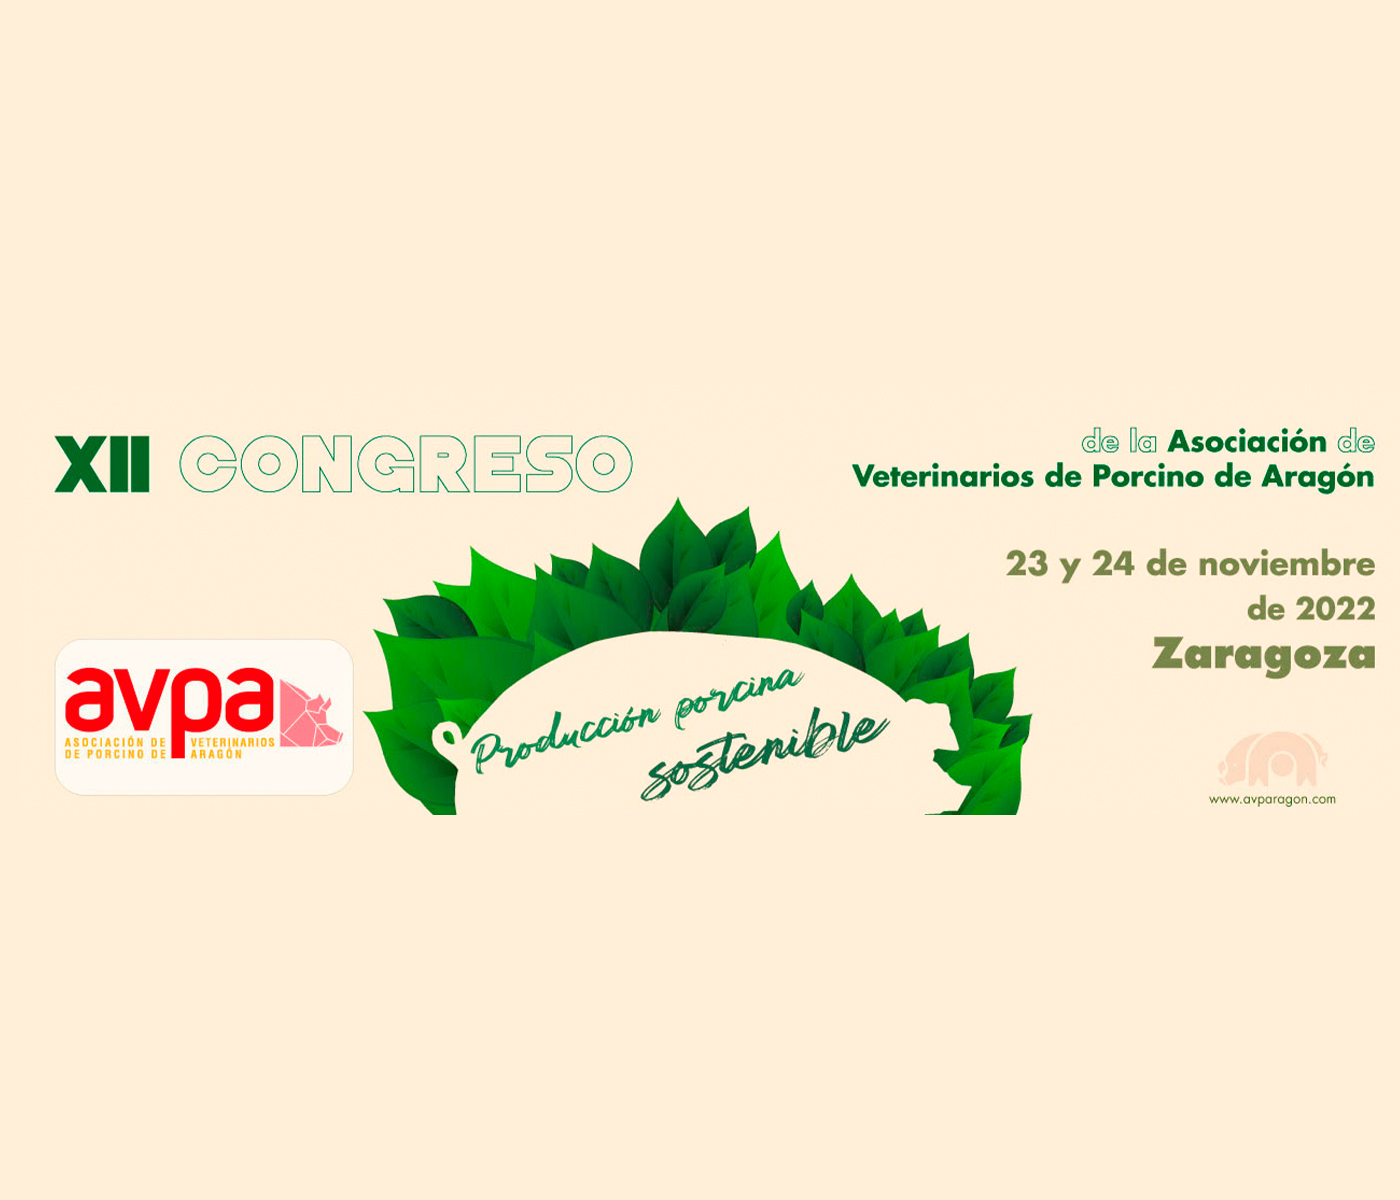 La producción porcina sostenible se gesta en el XII congreso de la AVPA